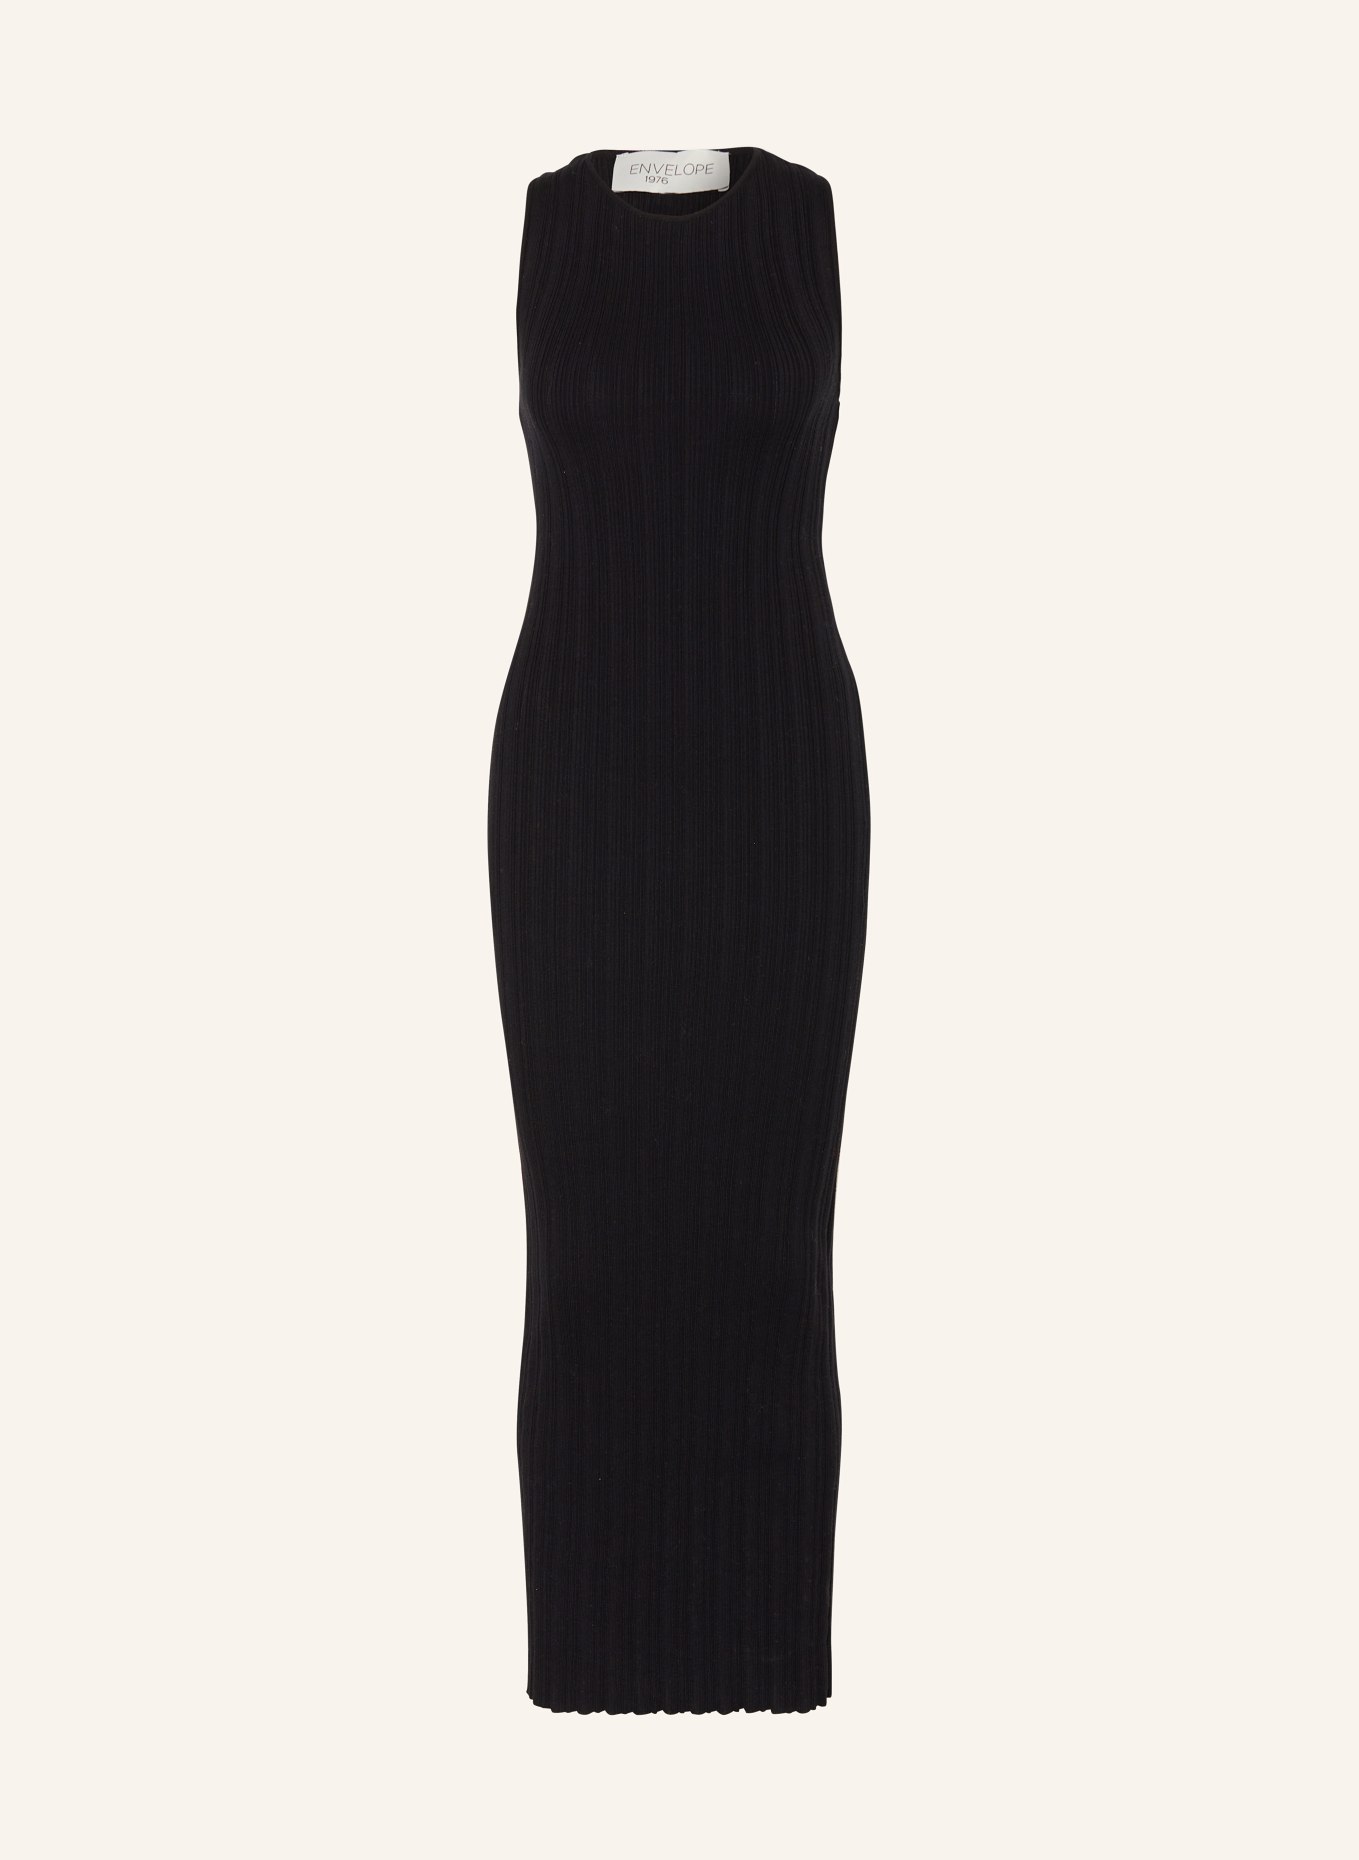 ENVELOPE 1976 Knit dress MALIBU, Color: BLACK (Image 1)